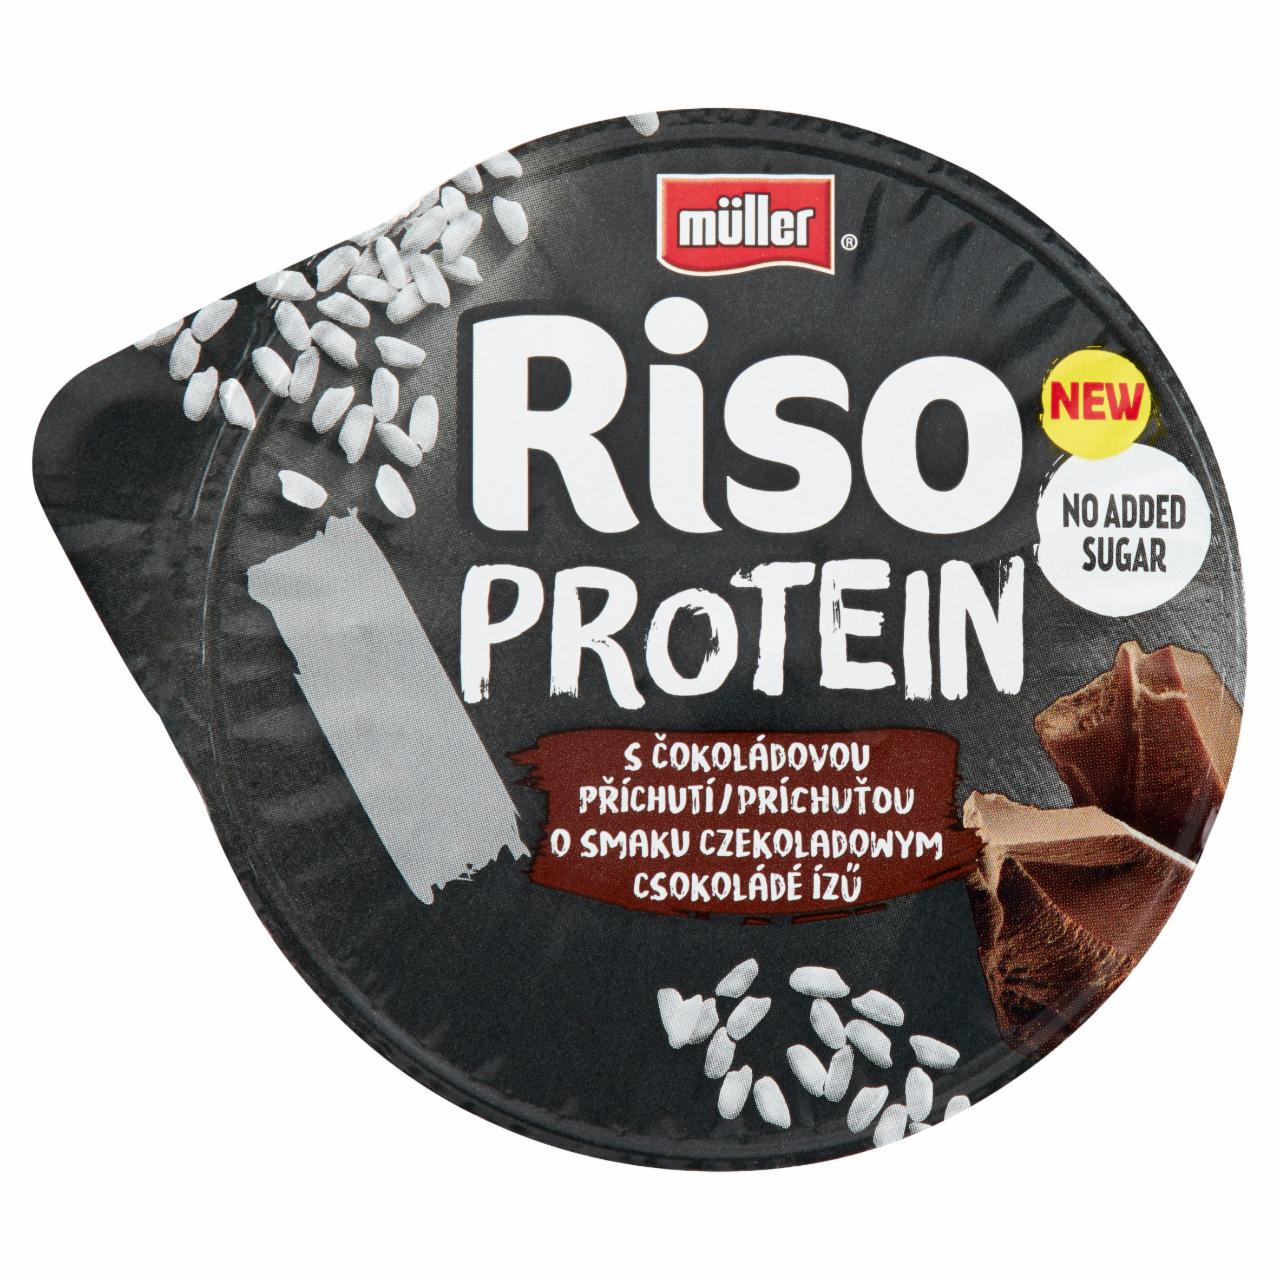 Képek - Müller Riso Protein tejberizs desszert csokoládé ízű készítménnyel 180 g